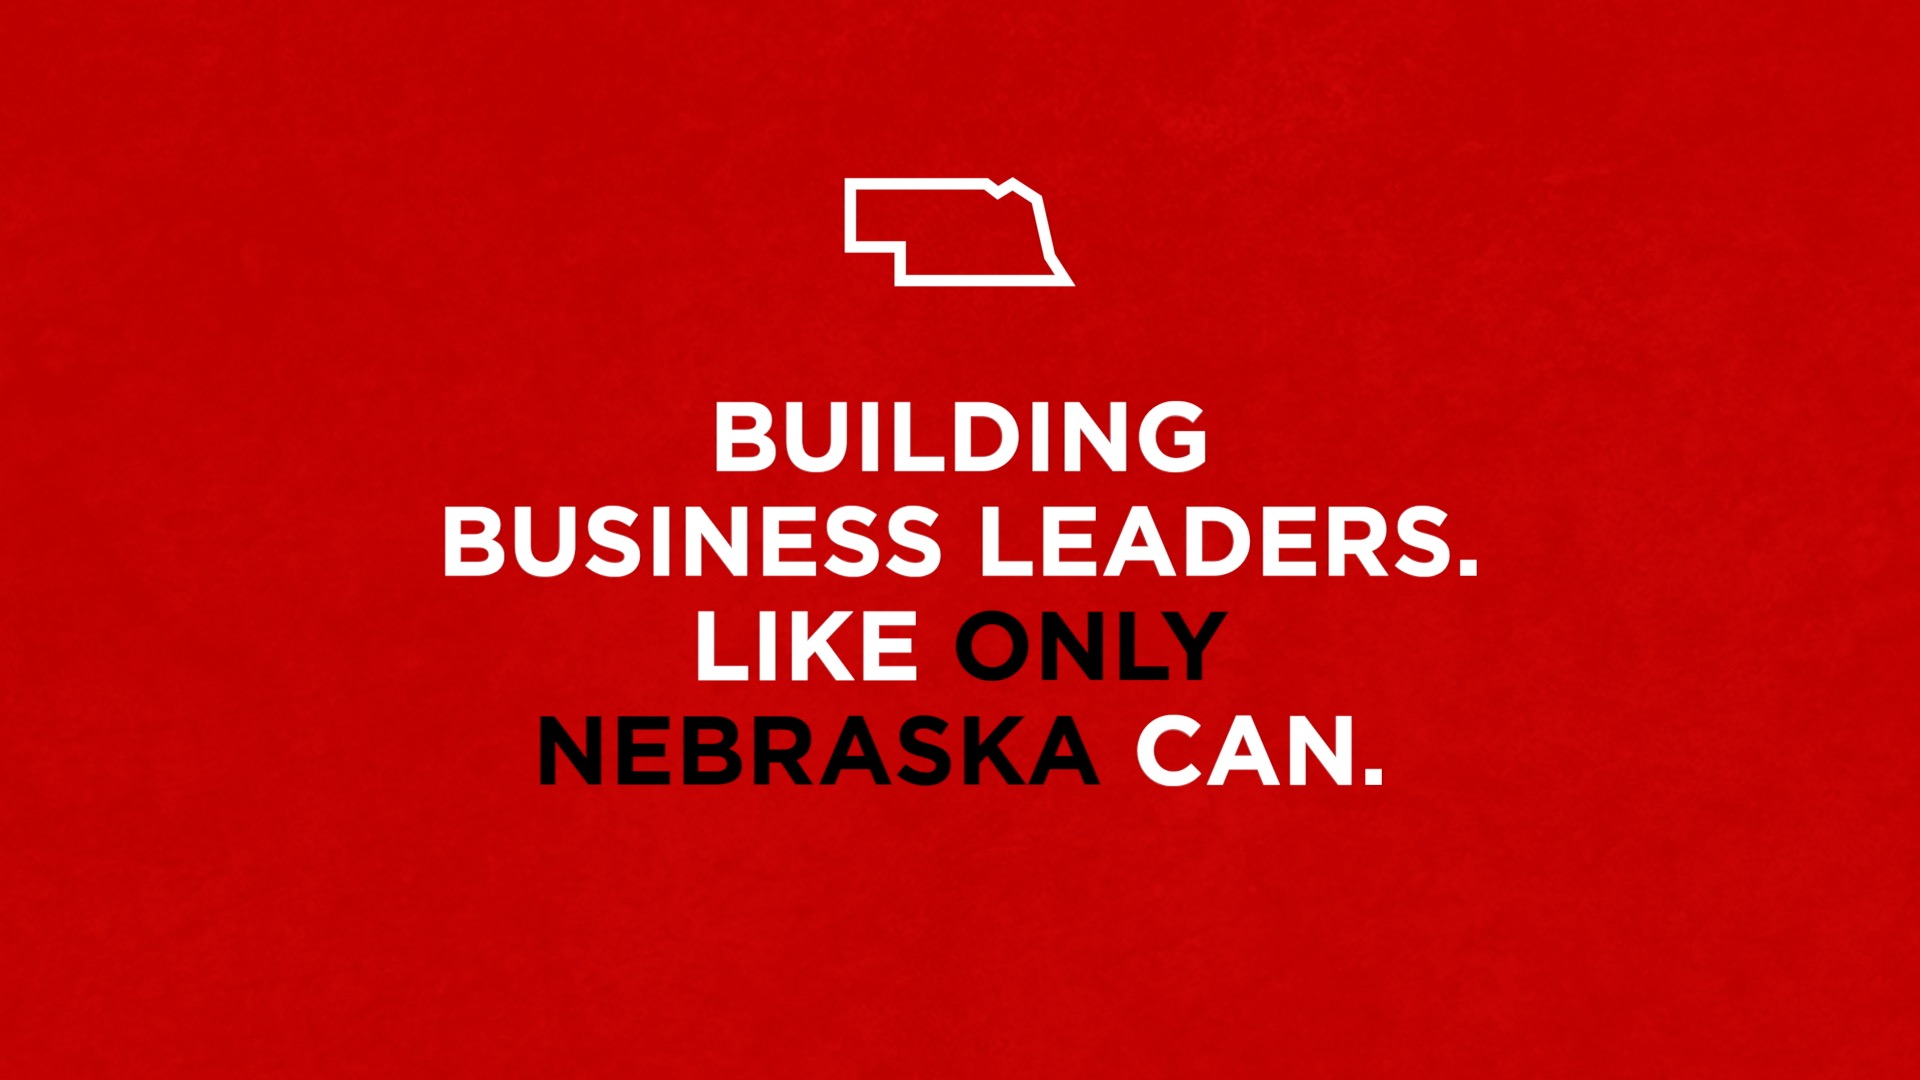 Nebraska Business: Only in Nebraska